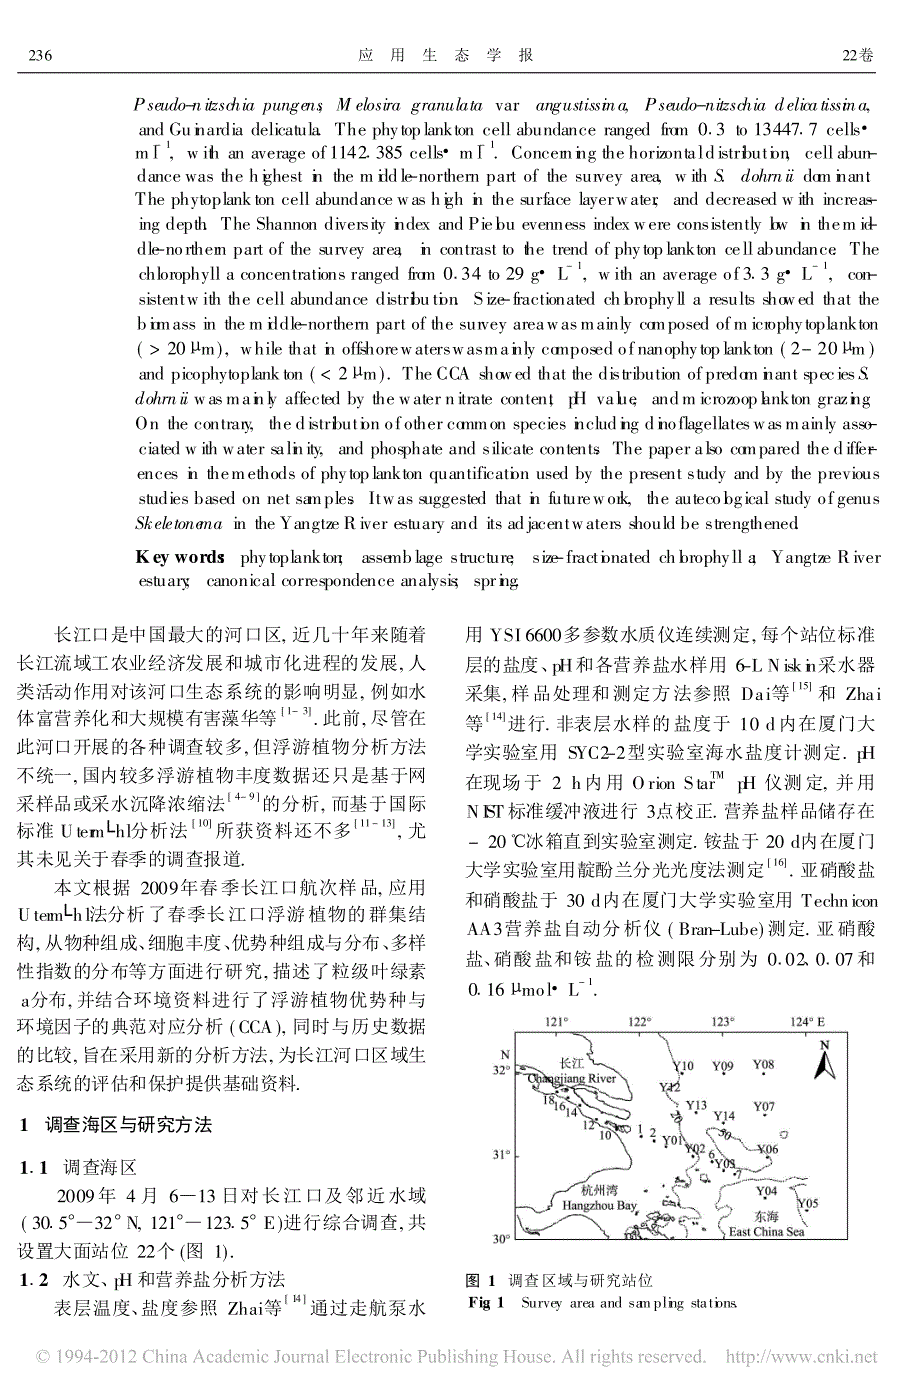 2009年春季长江口及其邻近水域浮游植物_物种组成与粒级叶绿素a_第2页